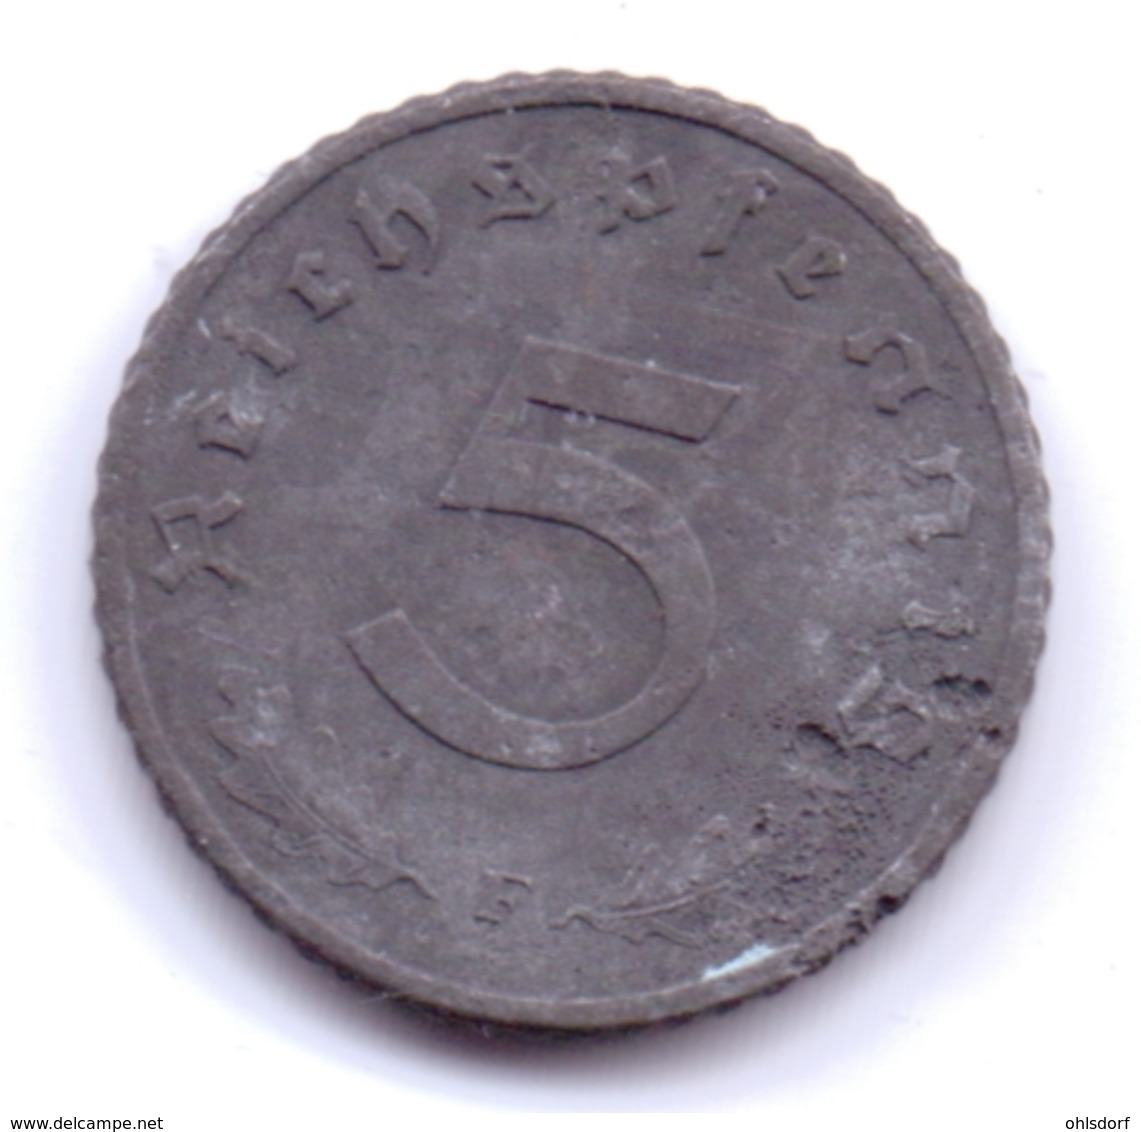 DEUTSCHES REICH 1942 F: 5 Reichspfennig, KM 100 - 5 Reichspfennig